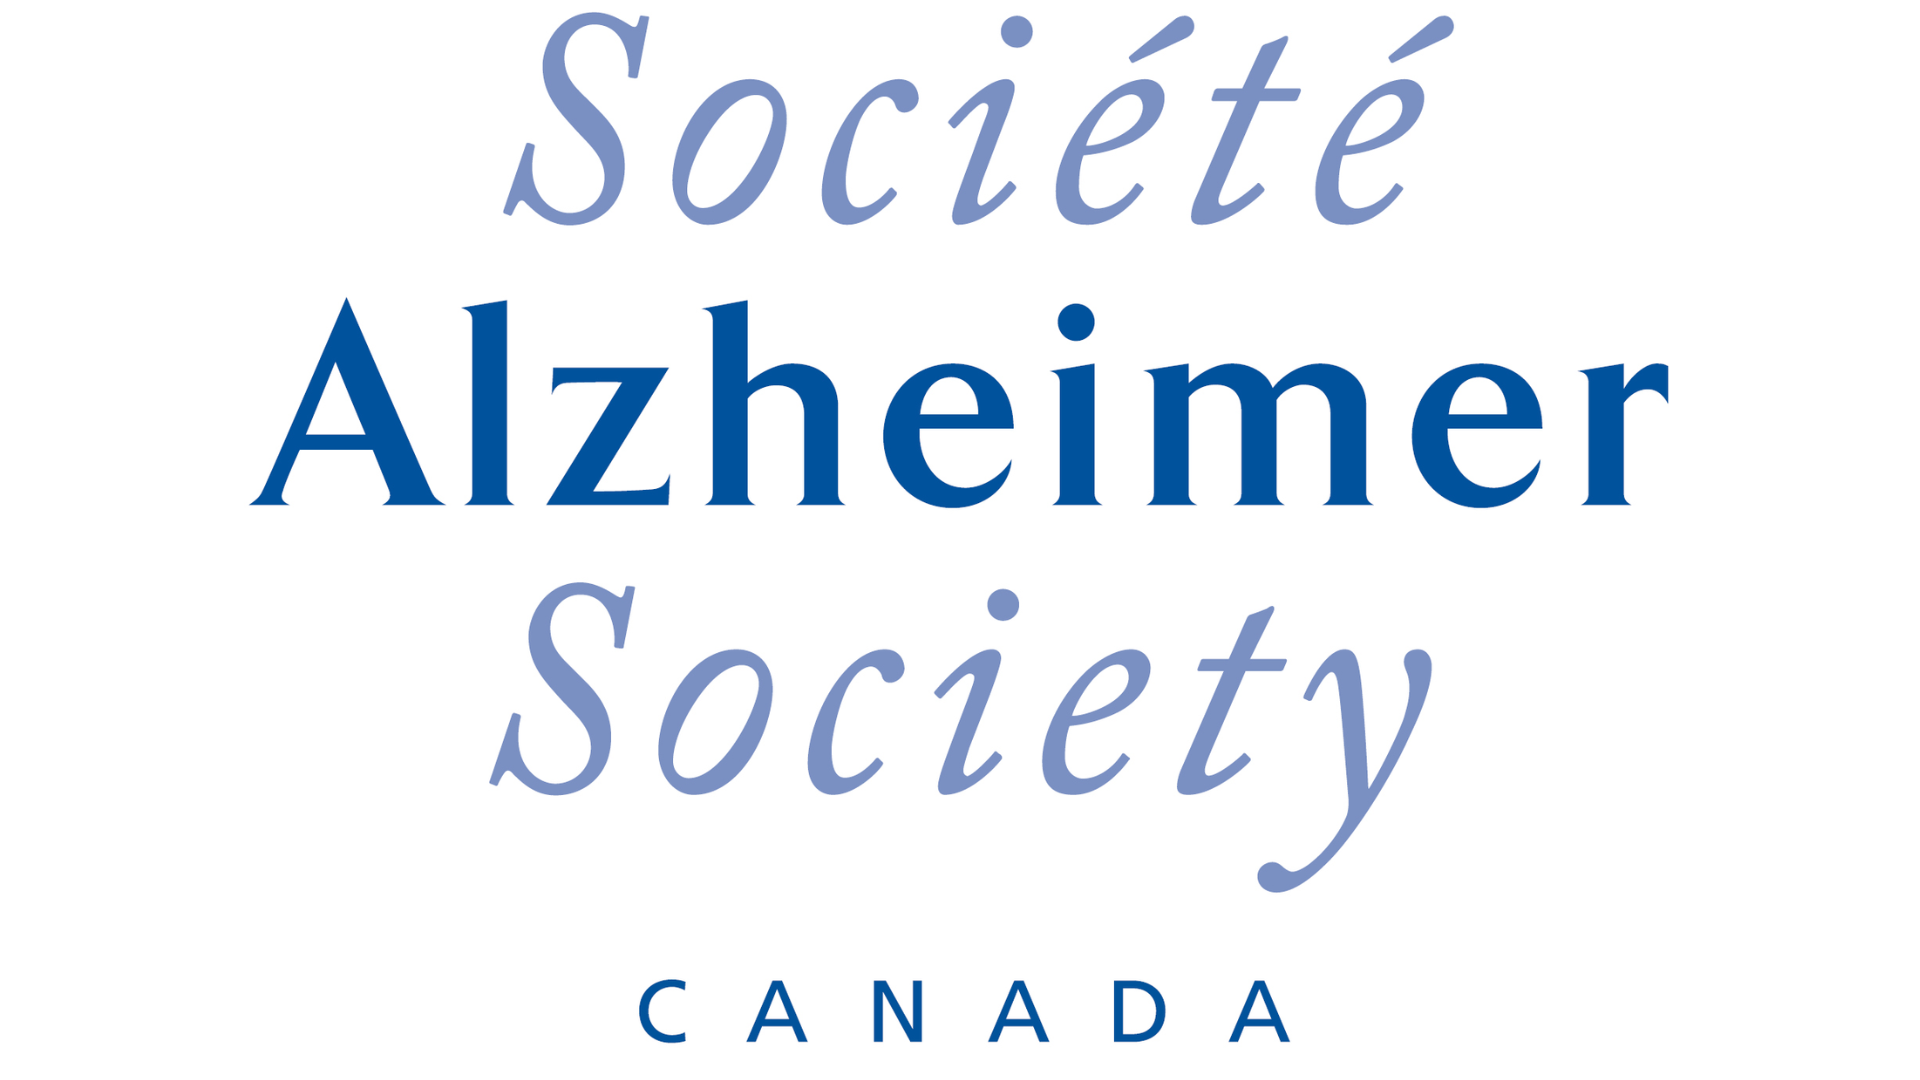 Alzheimer Canada